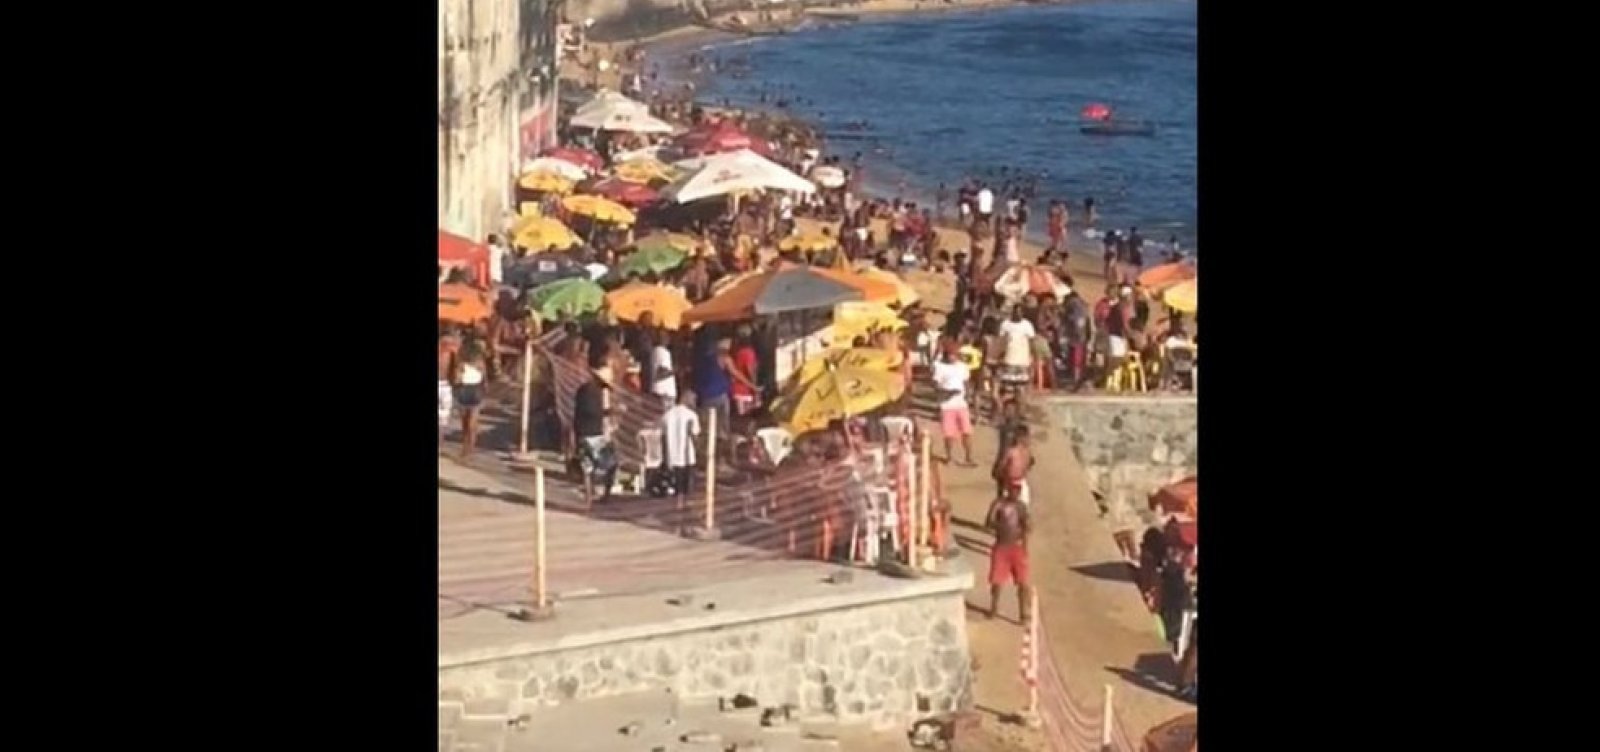 Sem fiscalização da Guarda Municipal, banhistas lotam praias de Salvador no final de semana